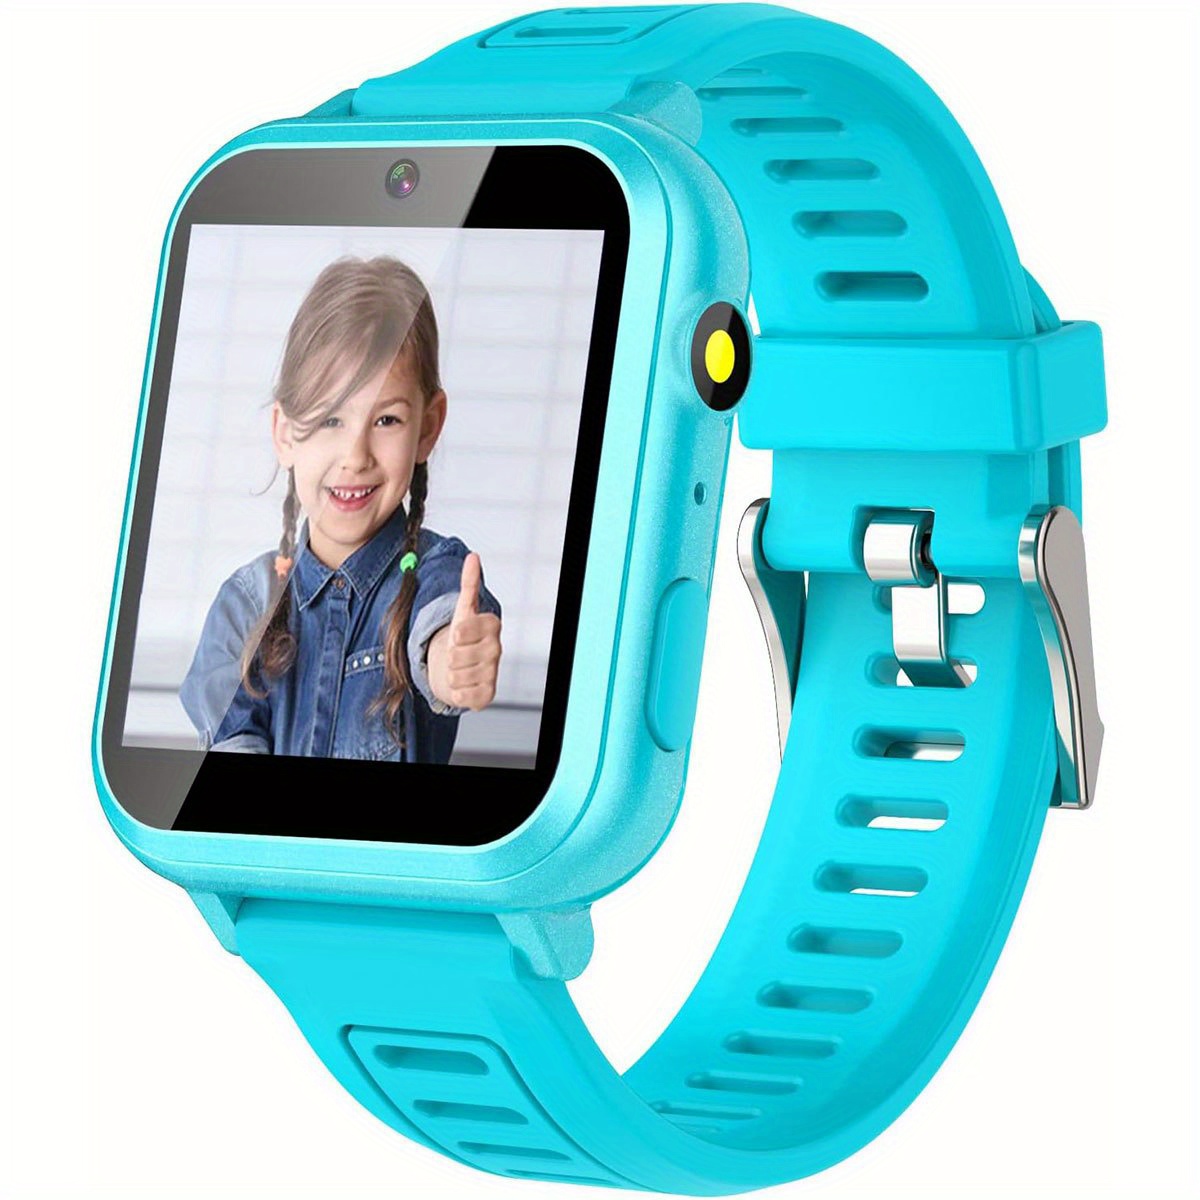 Cosjoype - Reloj inteligente para niños y niñas de 6 a 12 años, 24 juegos  de rompecabezas, pantalla táctil HD, con cámara de video, reproductor de